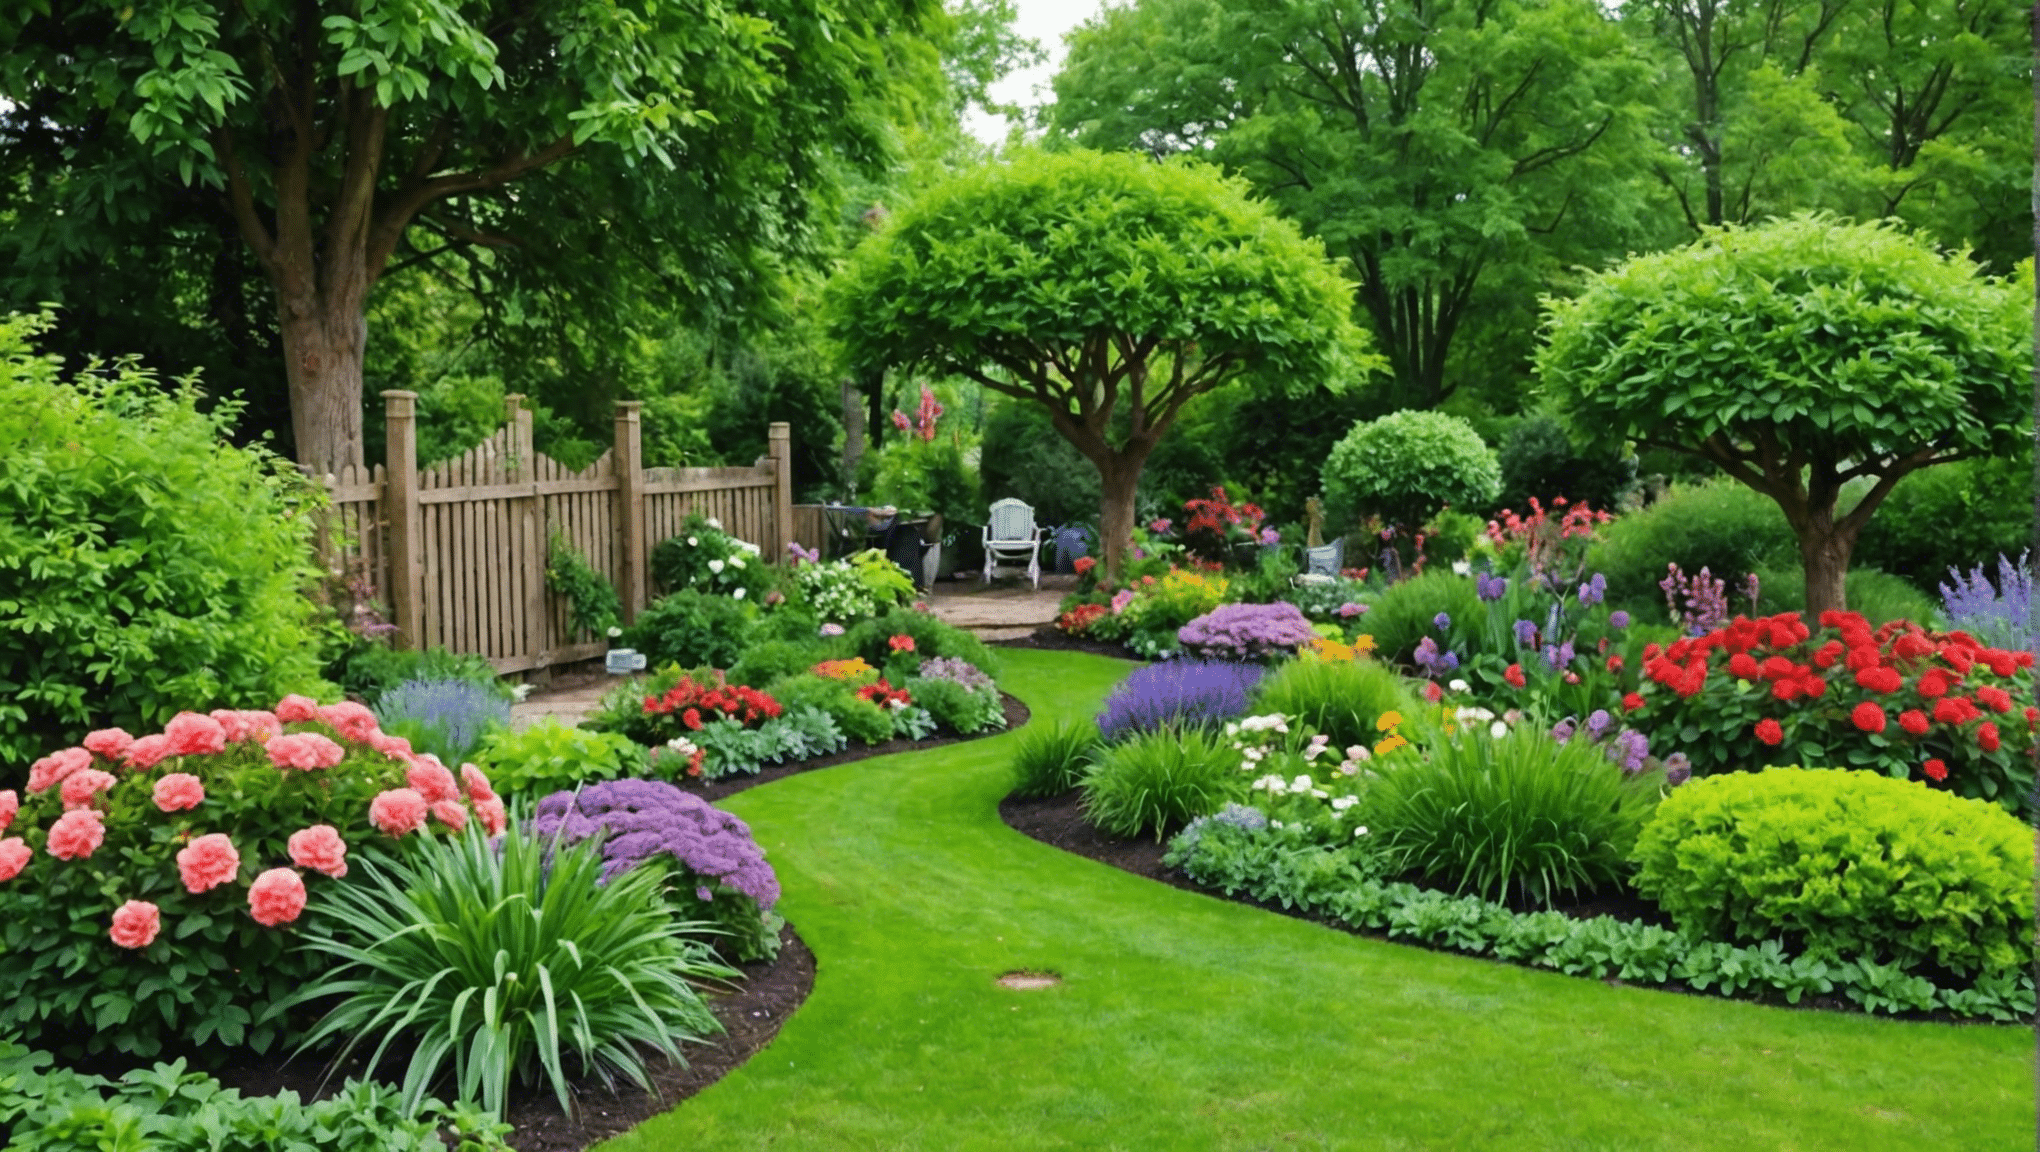 descubra se vale a pena experimentar essas ideias de jardinagem não convencionais e prepare-se para levar seu jardim para o próximo nível com conceitos inovadores.